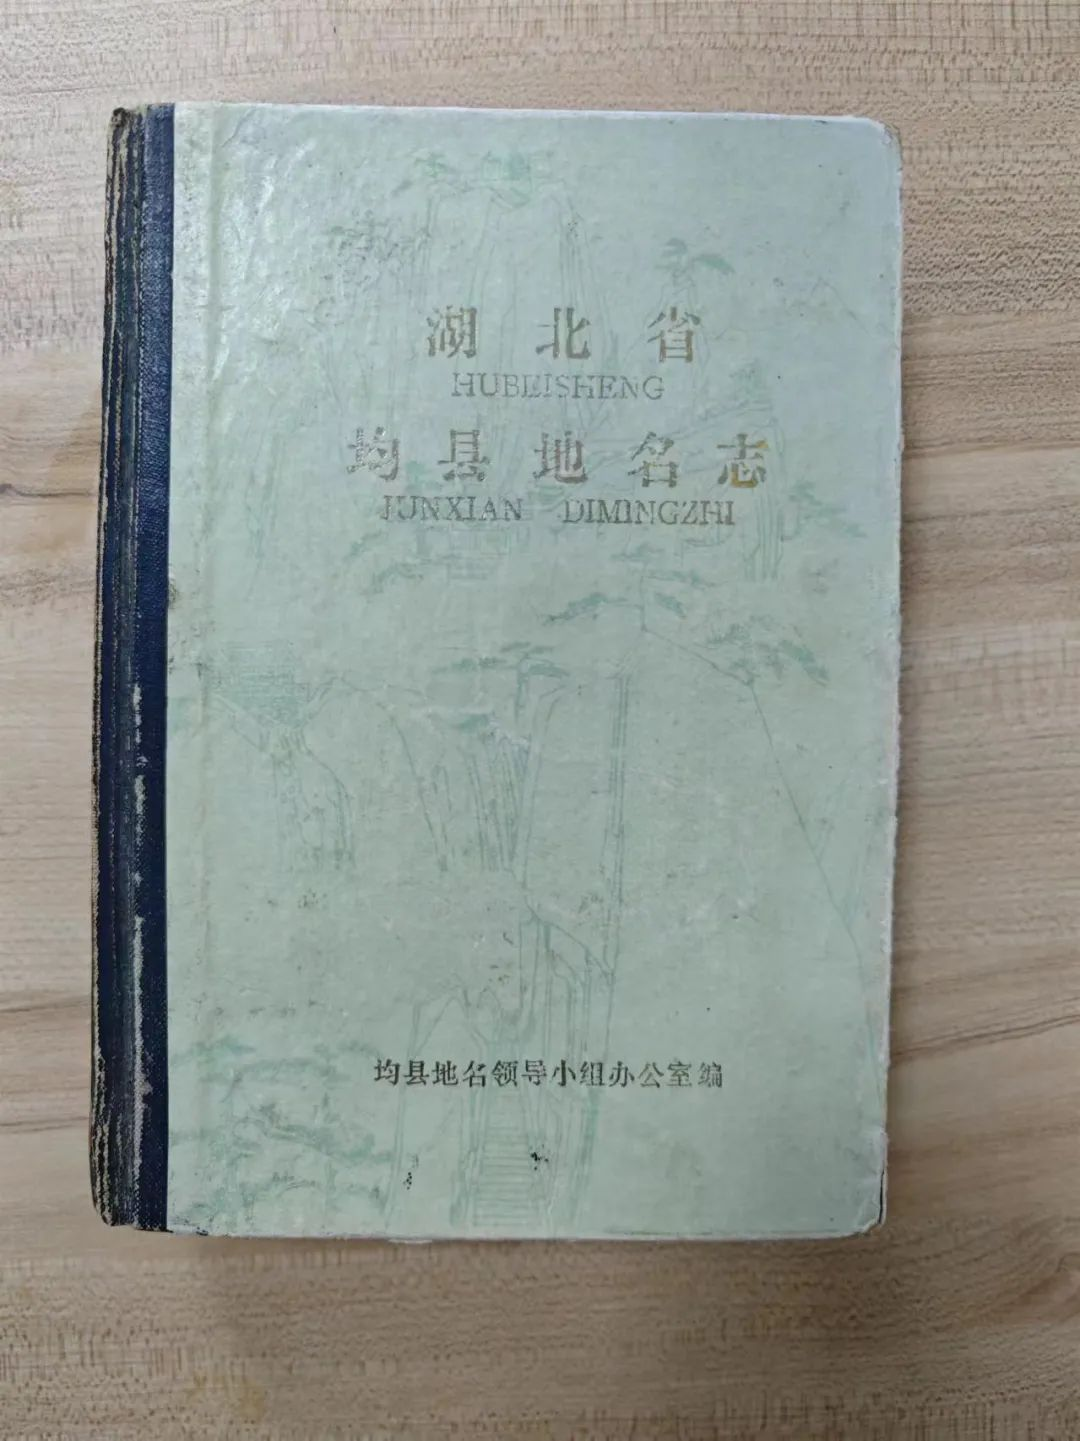 “沧浪文库”：社会各界向丹江口市图书馆捐书